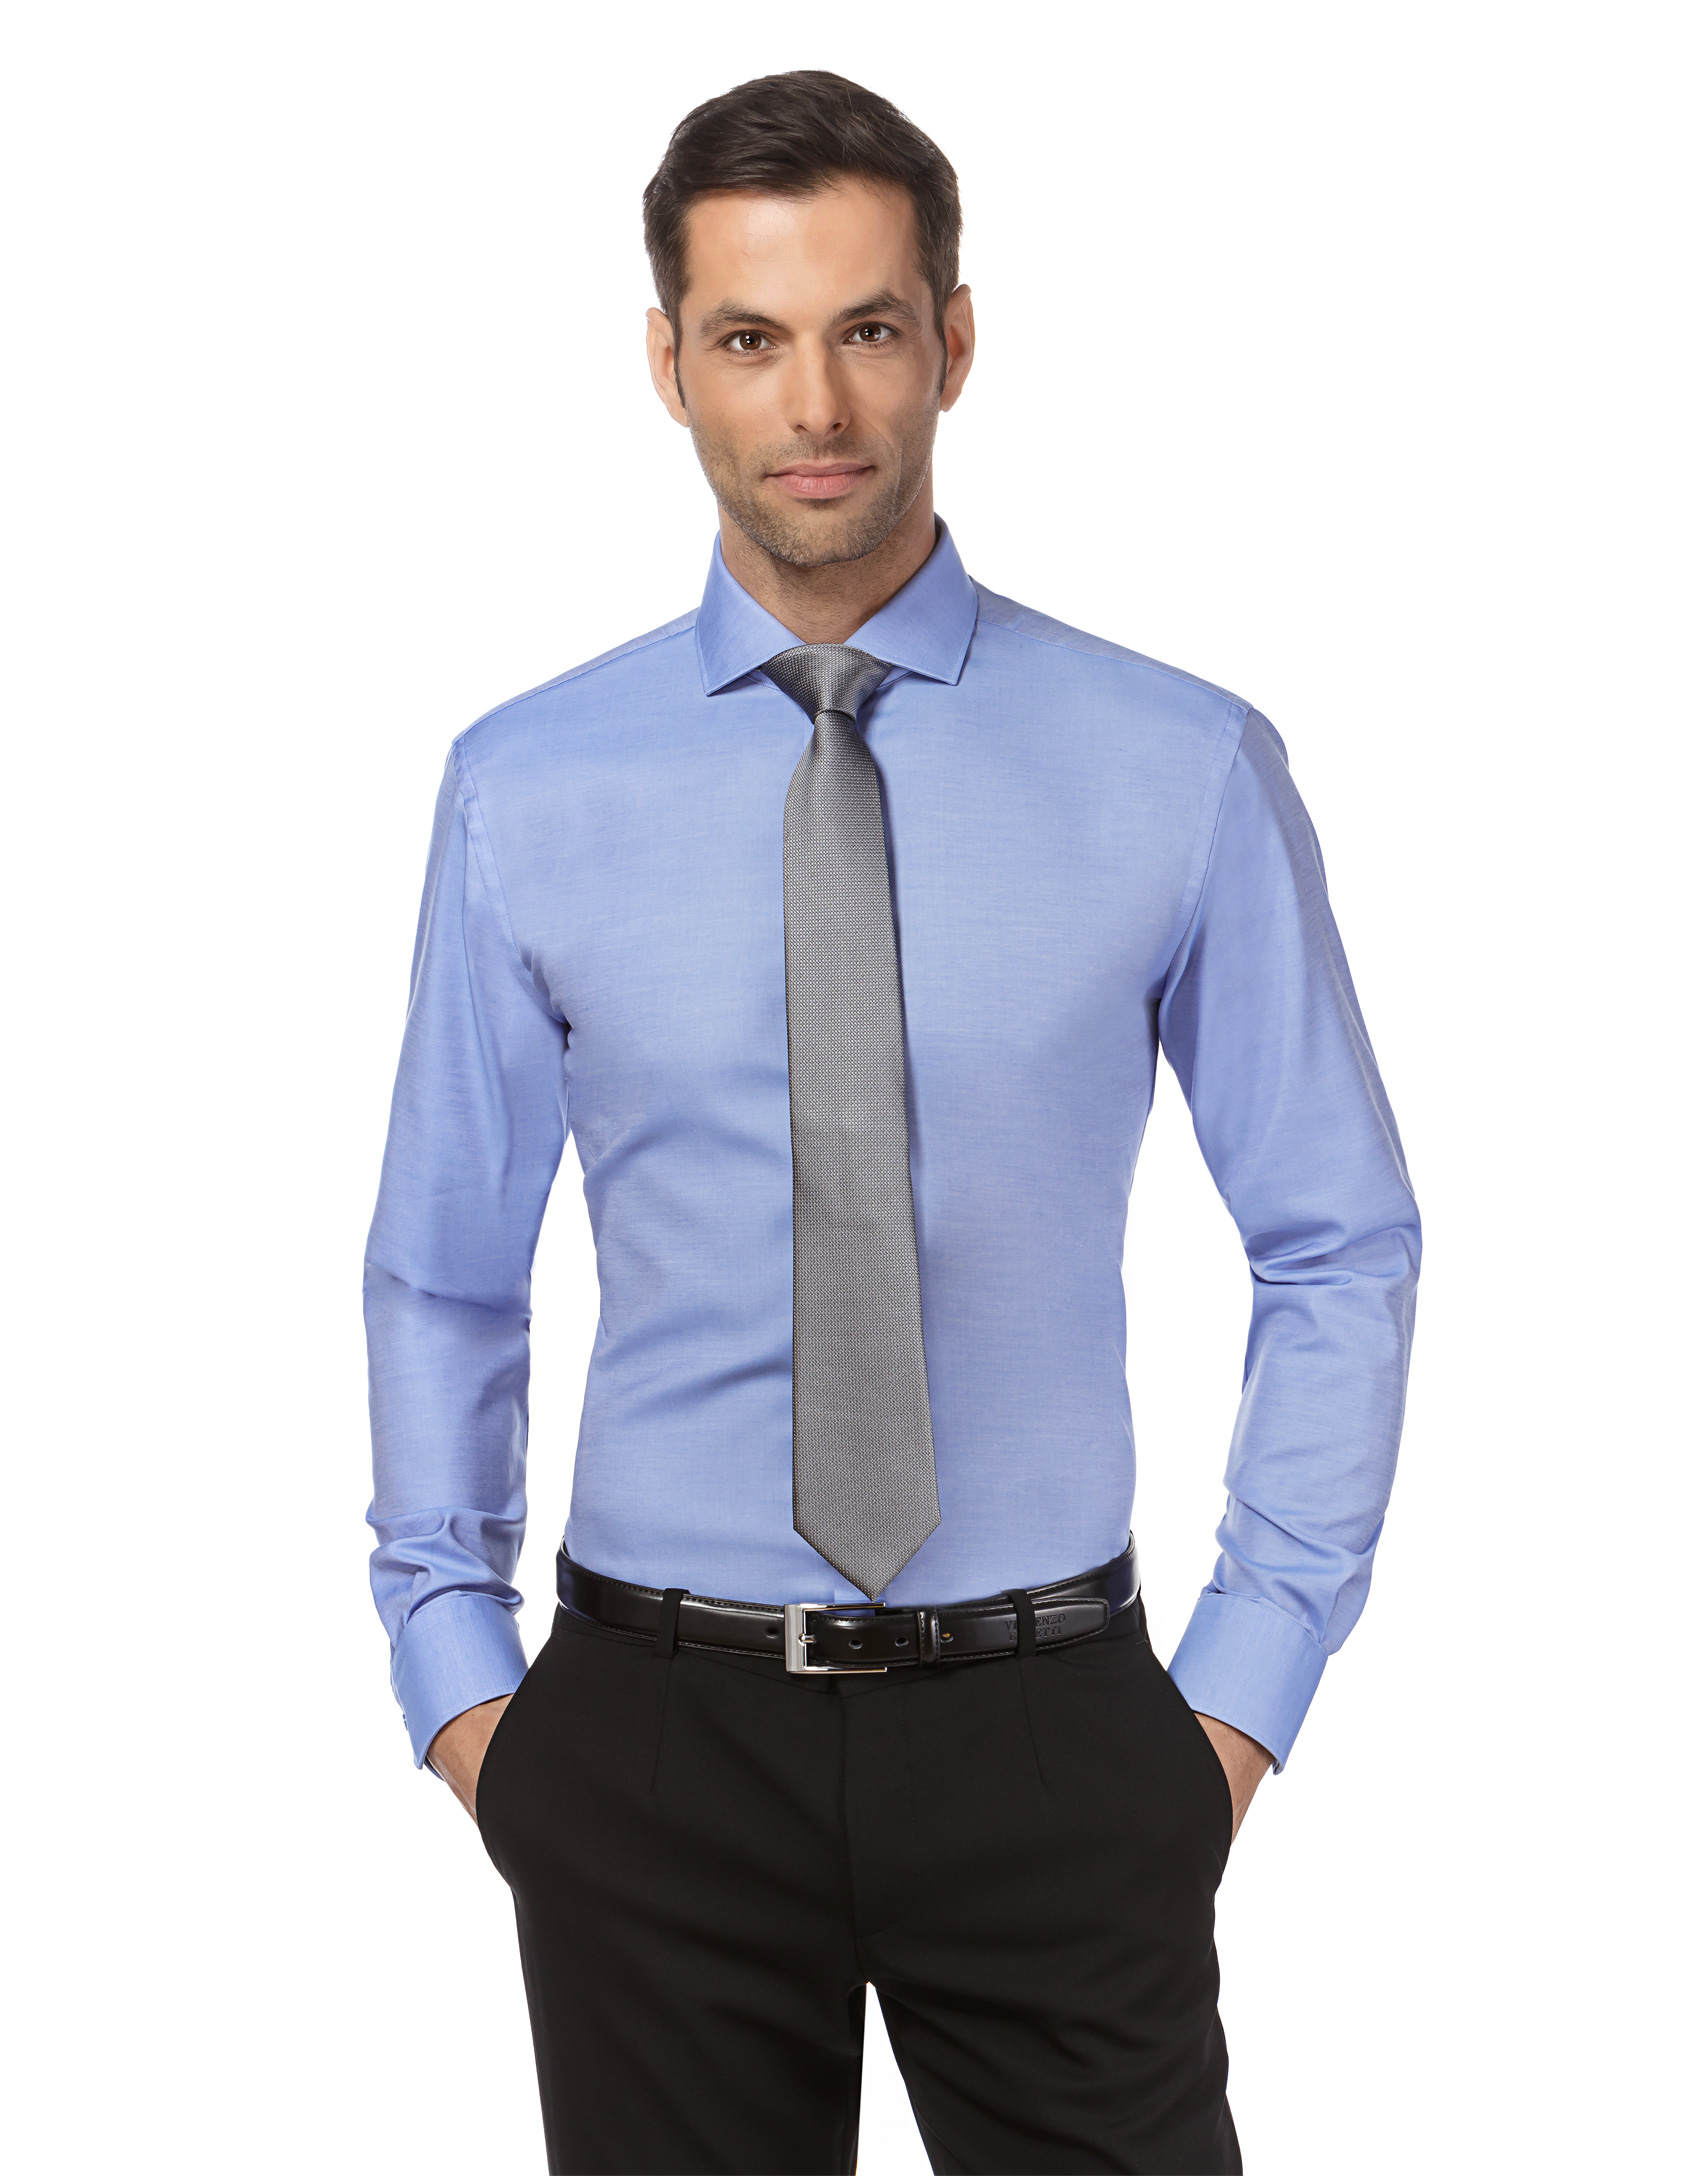 Vincenzo Boretti Herren-Hemd Body-Fit Männer lang-arm Hemden für Anzug Krawatte Business Hochzeit Freizeit besonders Slim-fit tailliert Uni-Farben bügelleicht